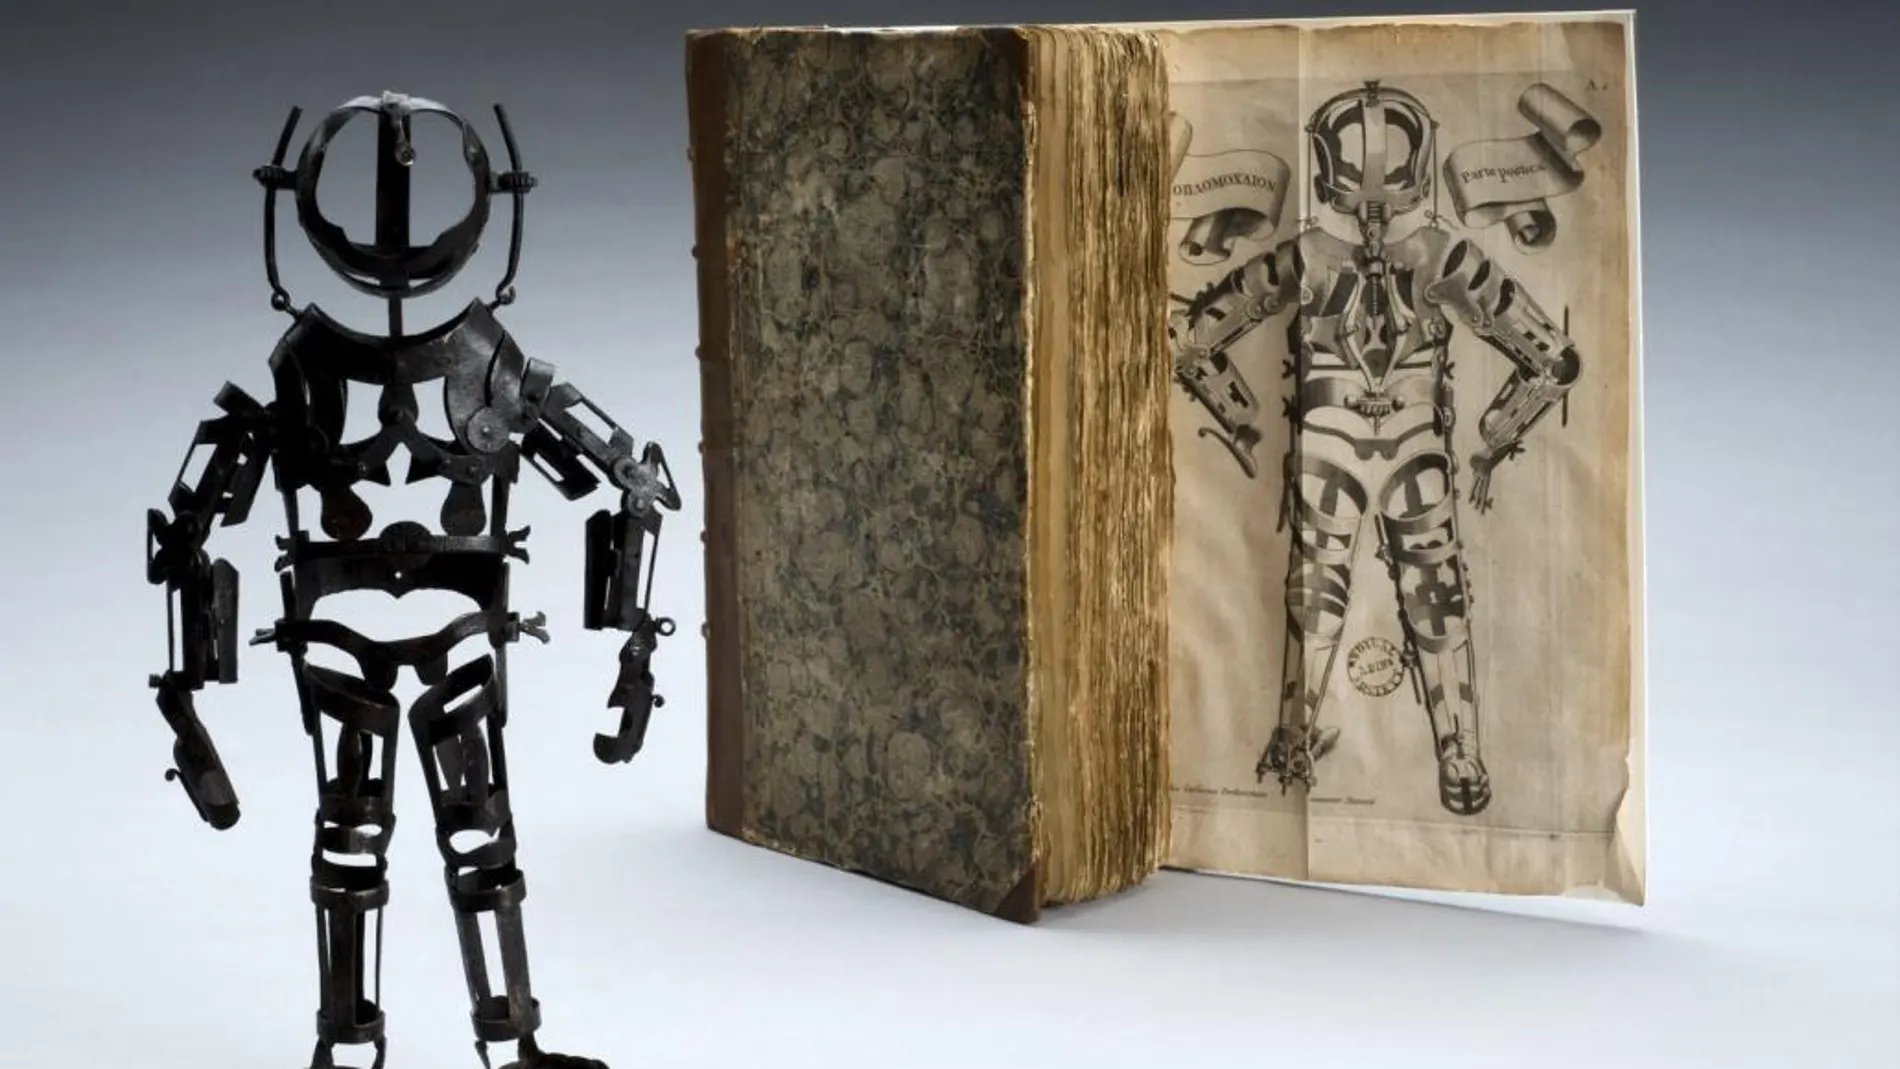 Fotografía facilitada por el Museo de la Ciencia de Londres de un maniquí de hierro articulado, una de las piezas que podrán verse en la exposición ‘Rise of the Robots’, que mostrará, a partir de febrero de 2017, la obsesión de la Humanidad por recrearse a sí misma a través de los robots en los últimos cinco siglos.